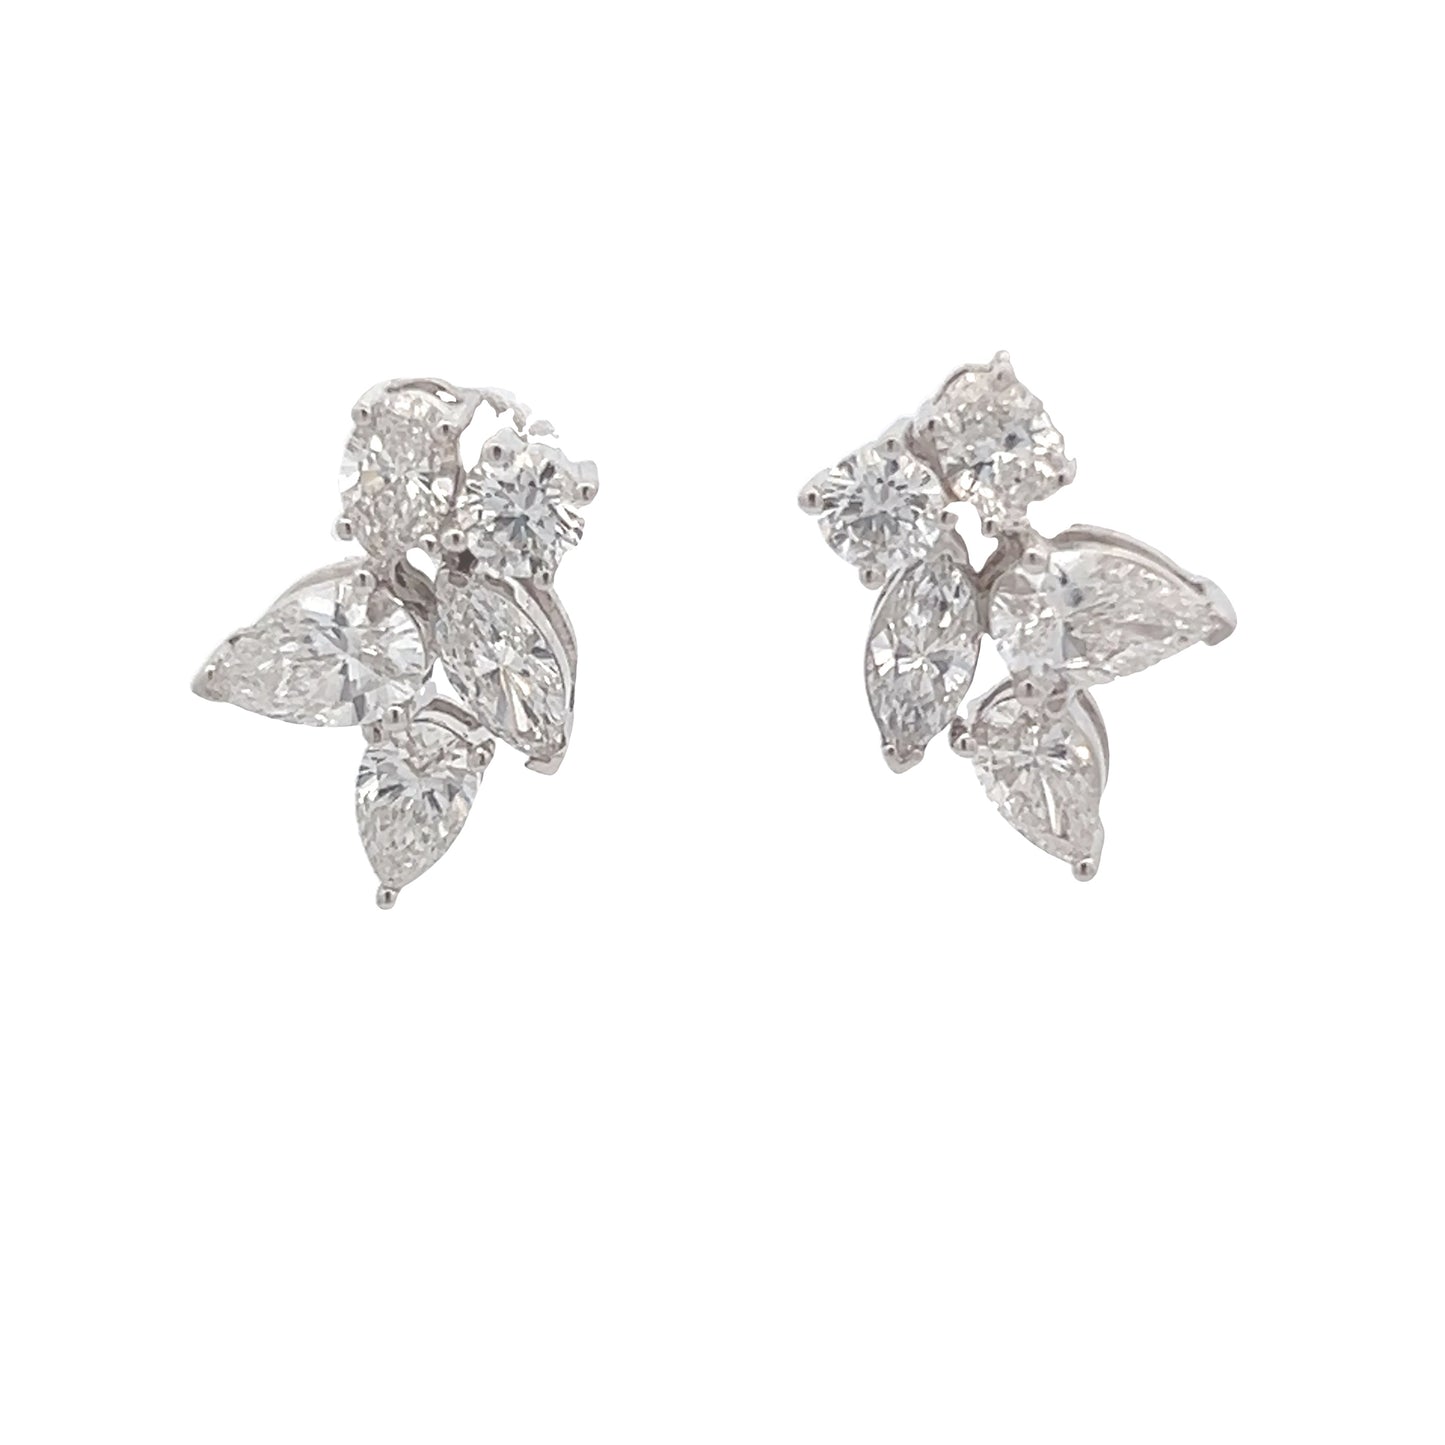 White Gold Variety Diamond Earrings